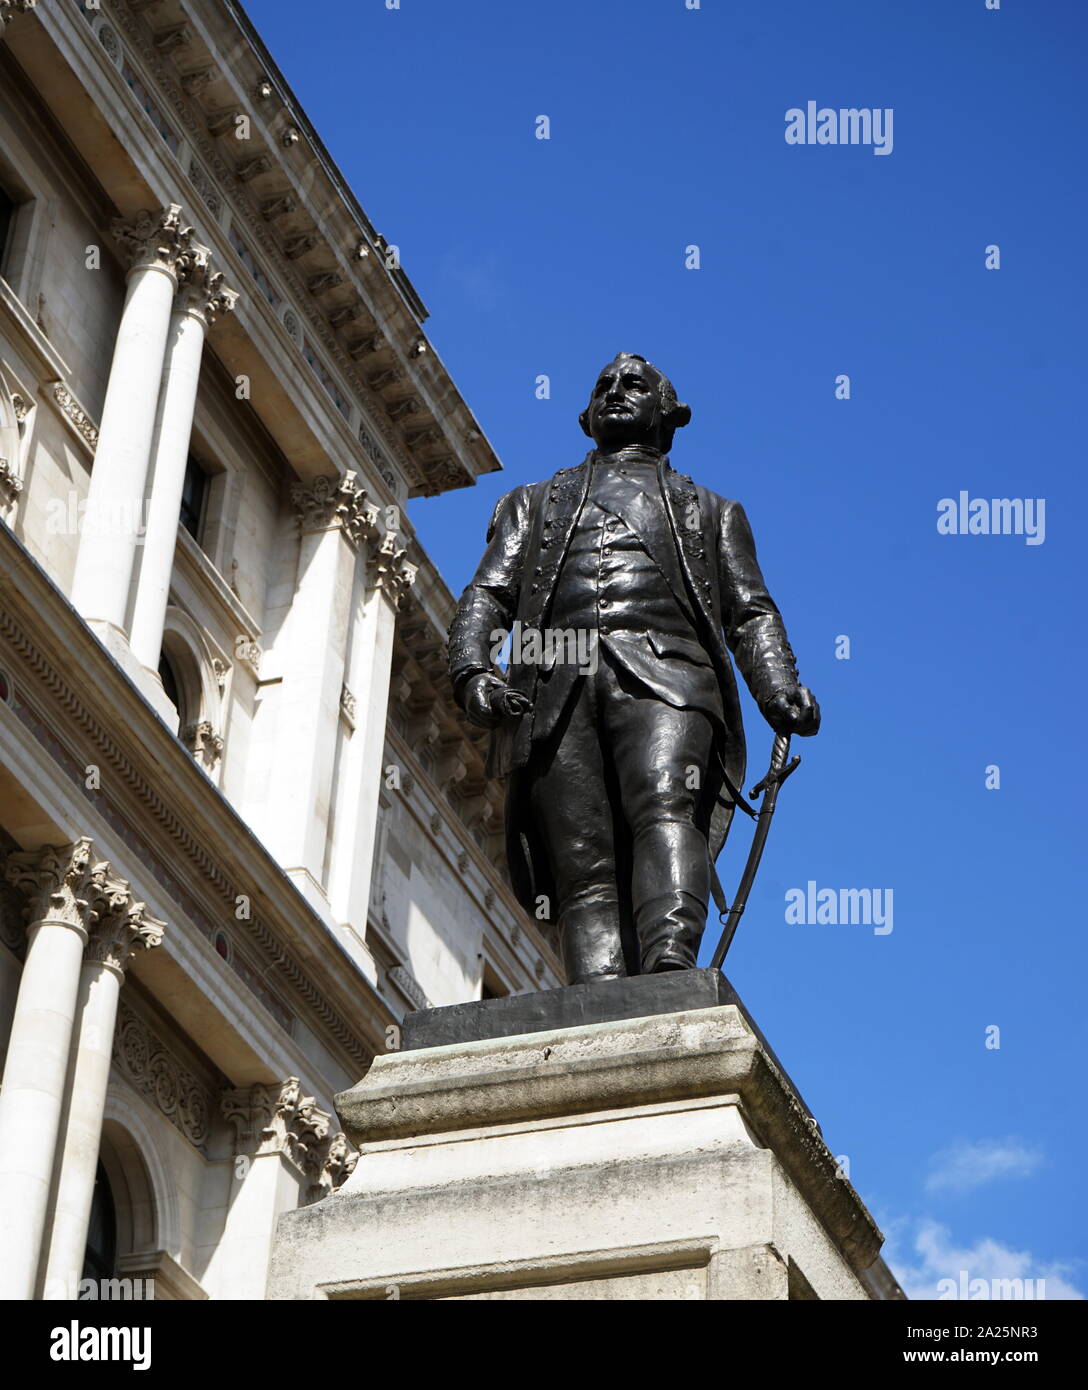 Statue von Major-general Robert Clive. major-general Robert Clive, 1. Baron Clive (1725-1774) ein britischer Offizier und Privateer, der die militärische und politische Vorherrschaft der East India Company in Bengalen etabliert. Stockfoto